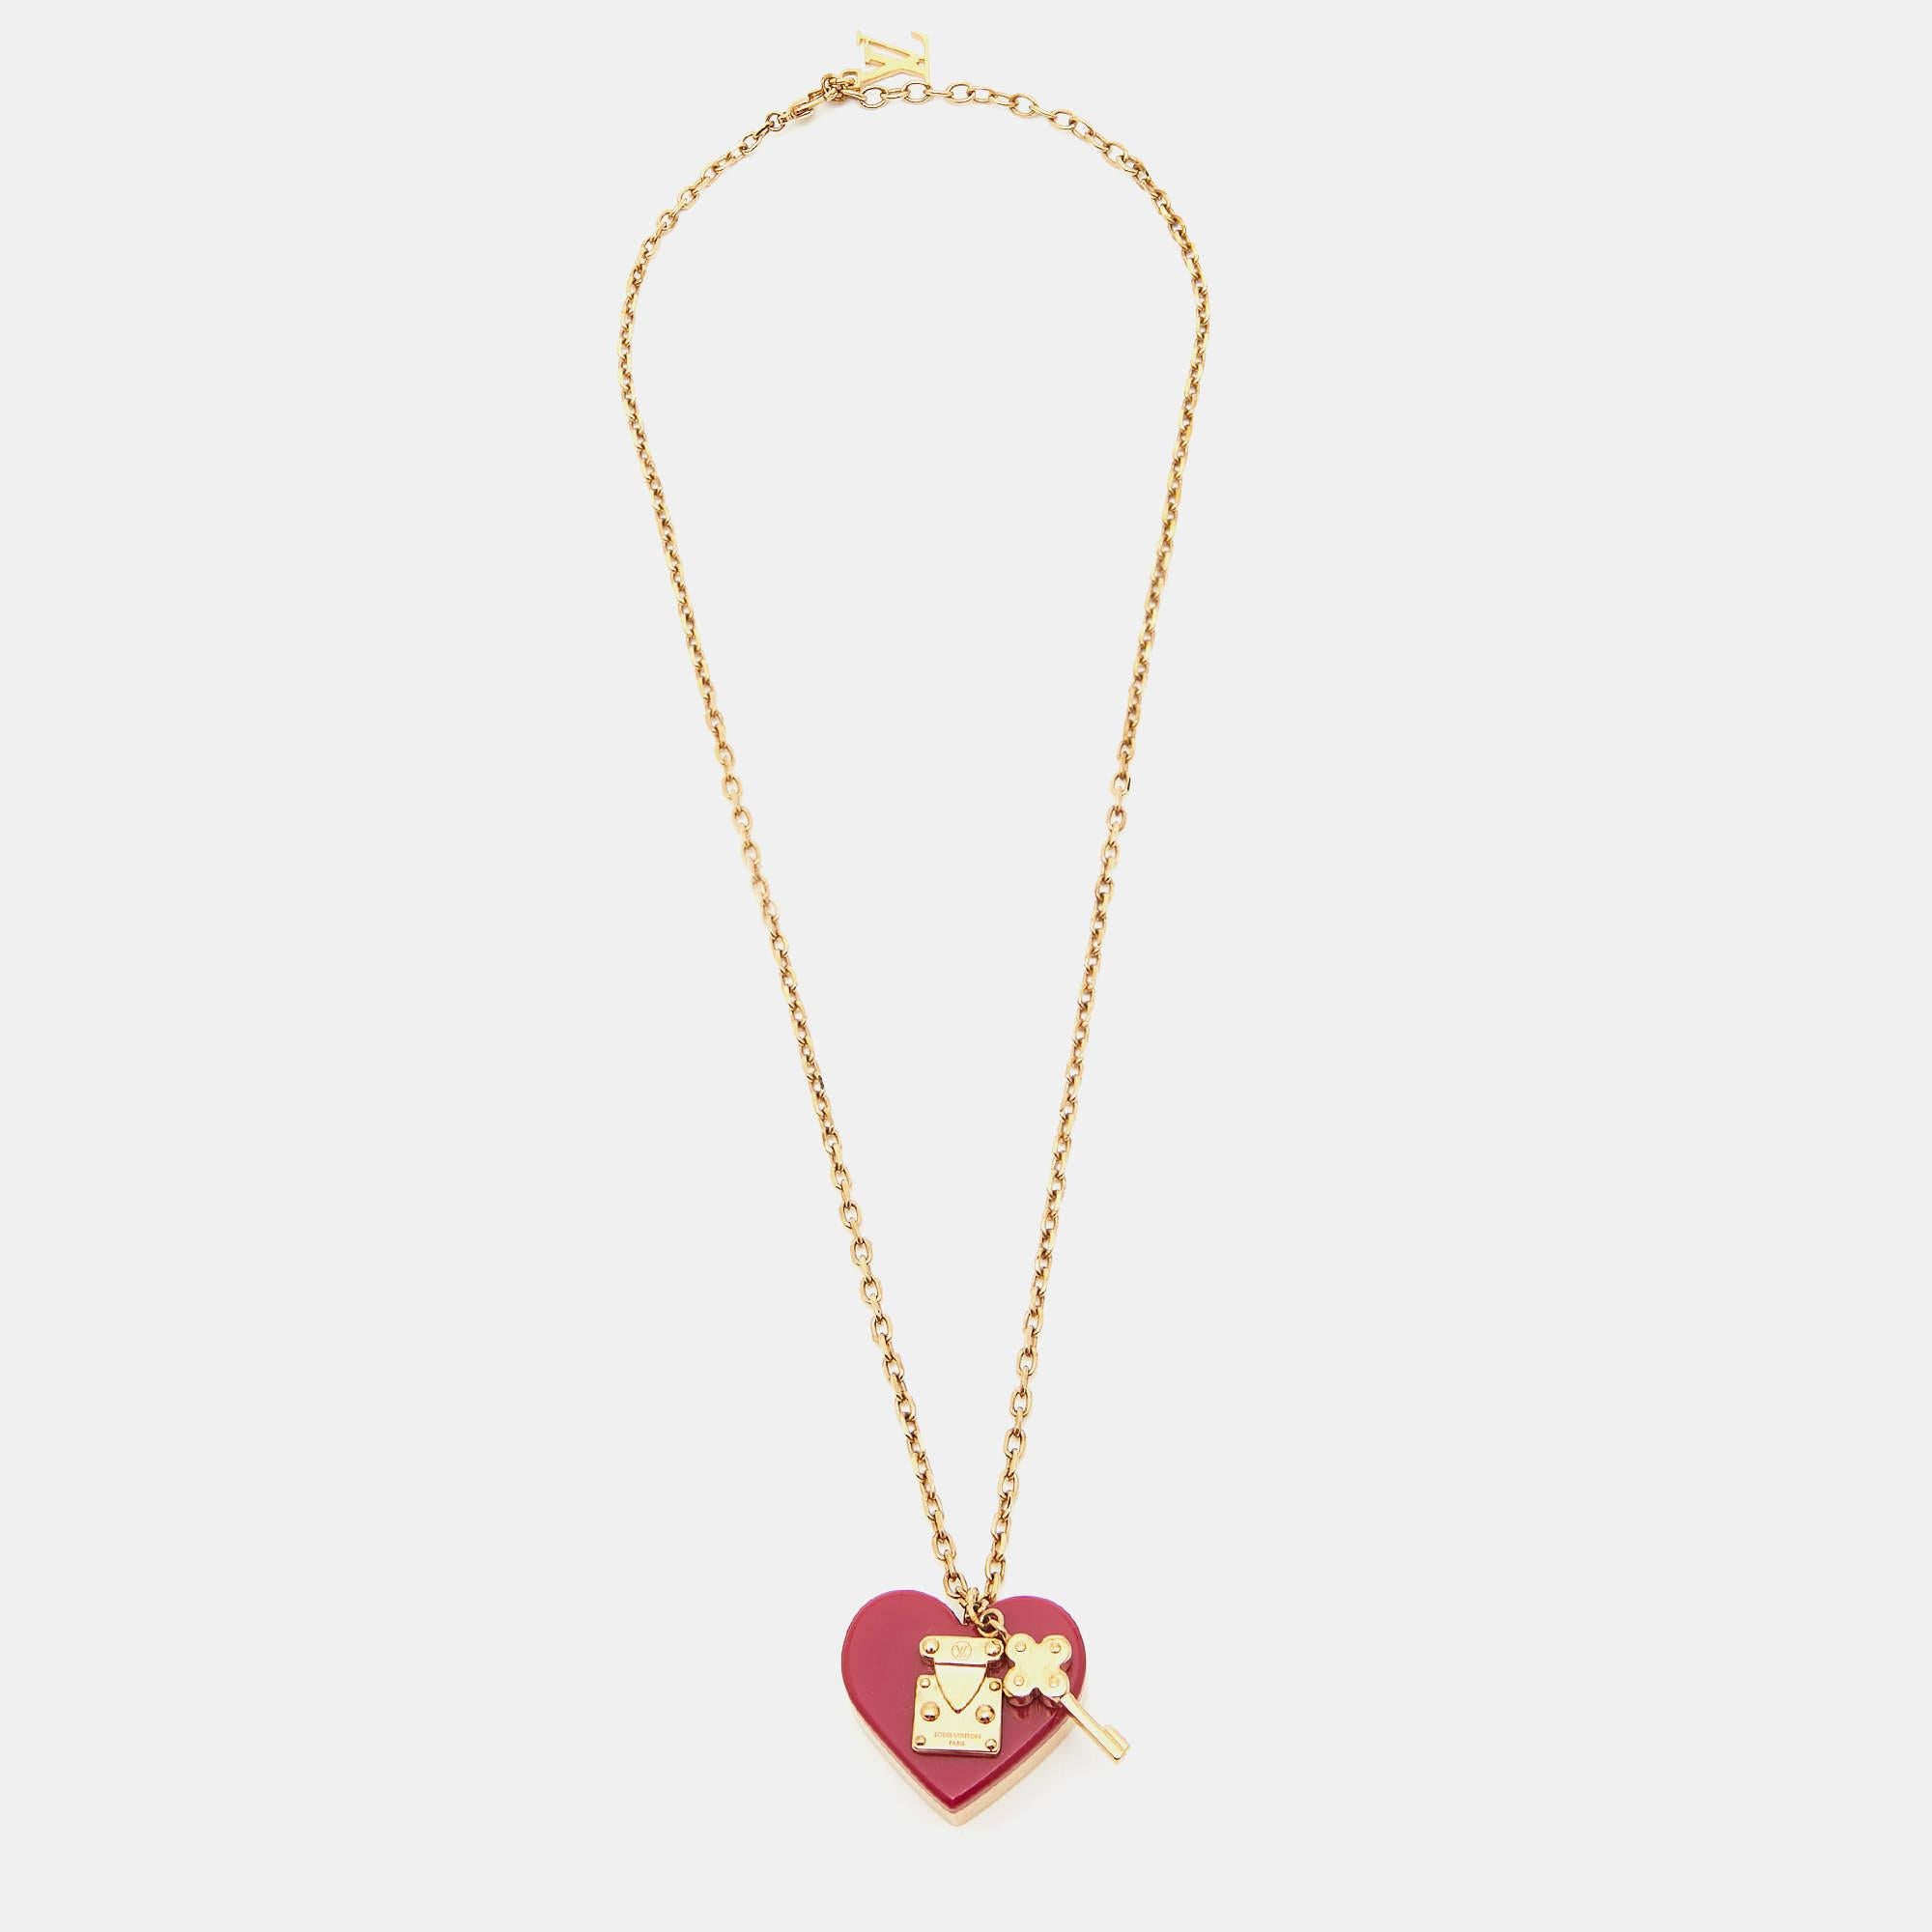 Diese hübsche Anhänger-Halskette von Louis Vuitton wird mit Sicherheit eines Ihrer Lieblingsaccessoires werden! Er ist aus goldfarbenem Metall gefertigt, und an der Kette befindet sich ein Anhänger mit Herzschloss und Schlüssel.

